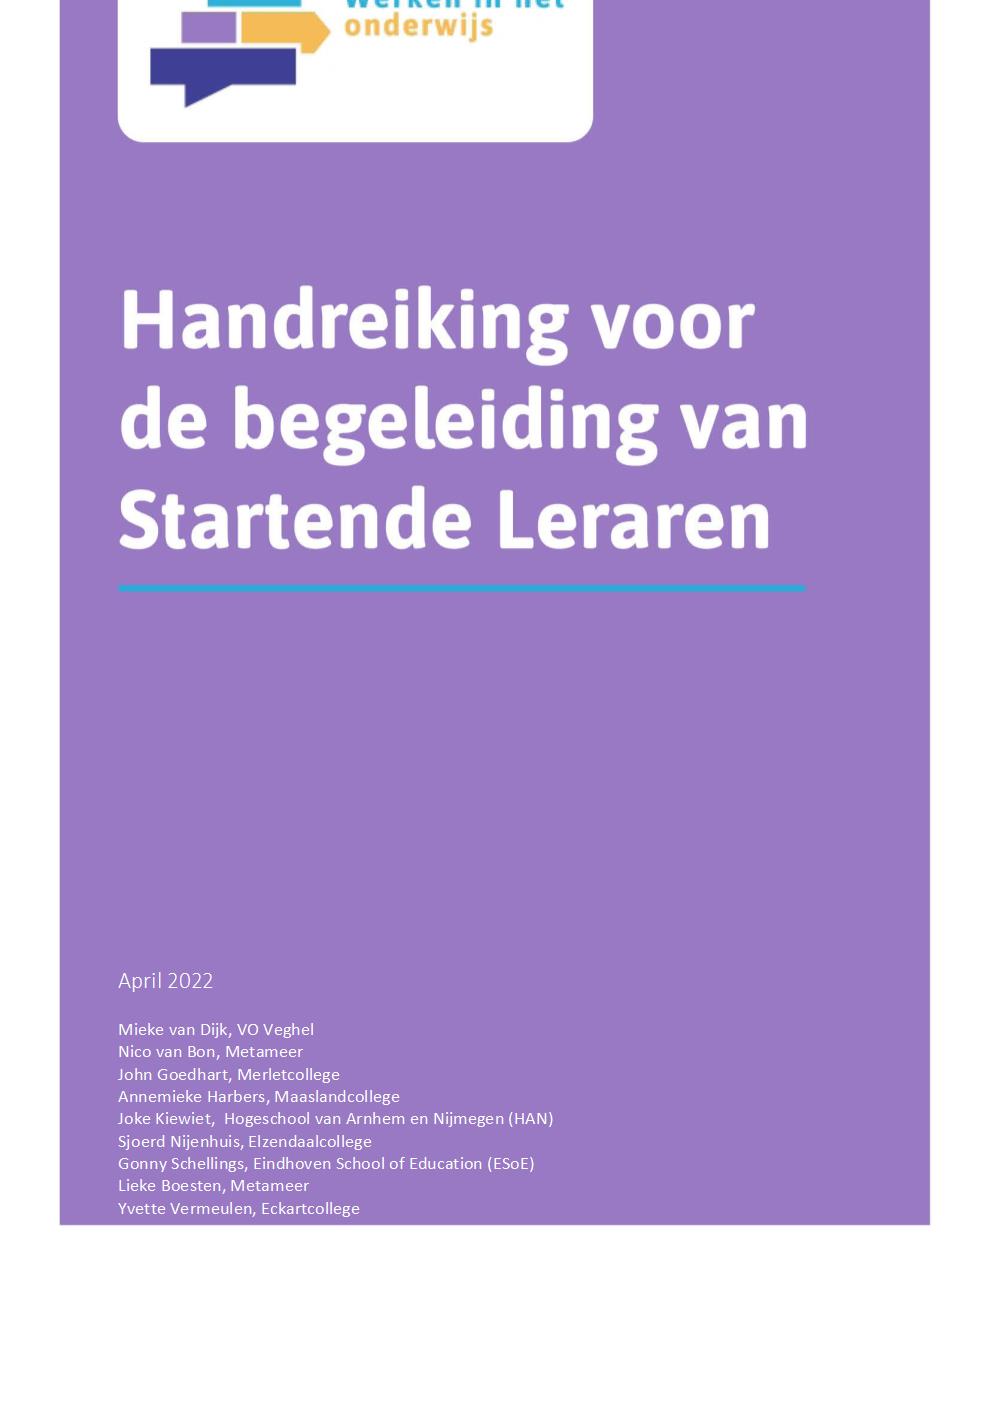 Handreiking begeleiding startende leraren RAP-regio Noordoost Brabant - april 2022